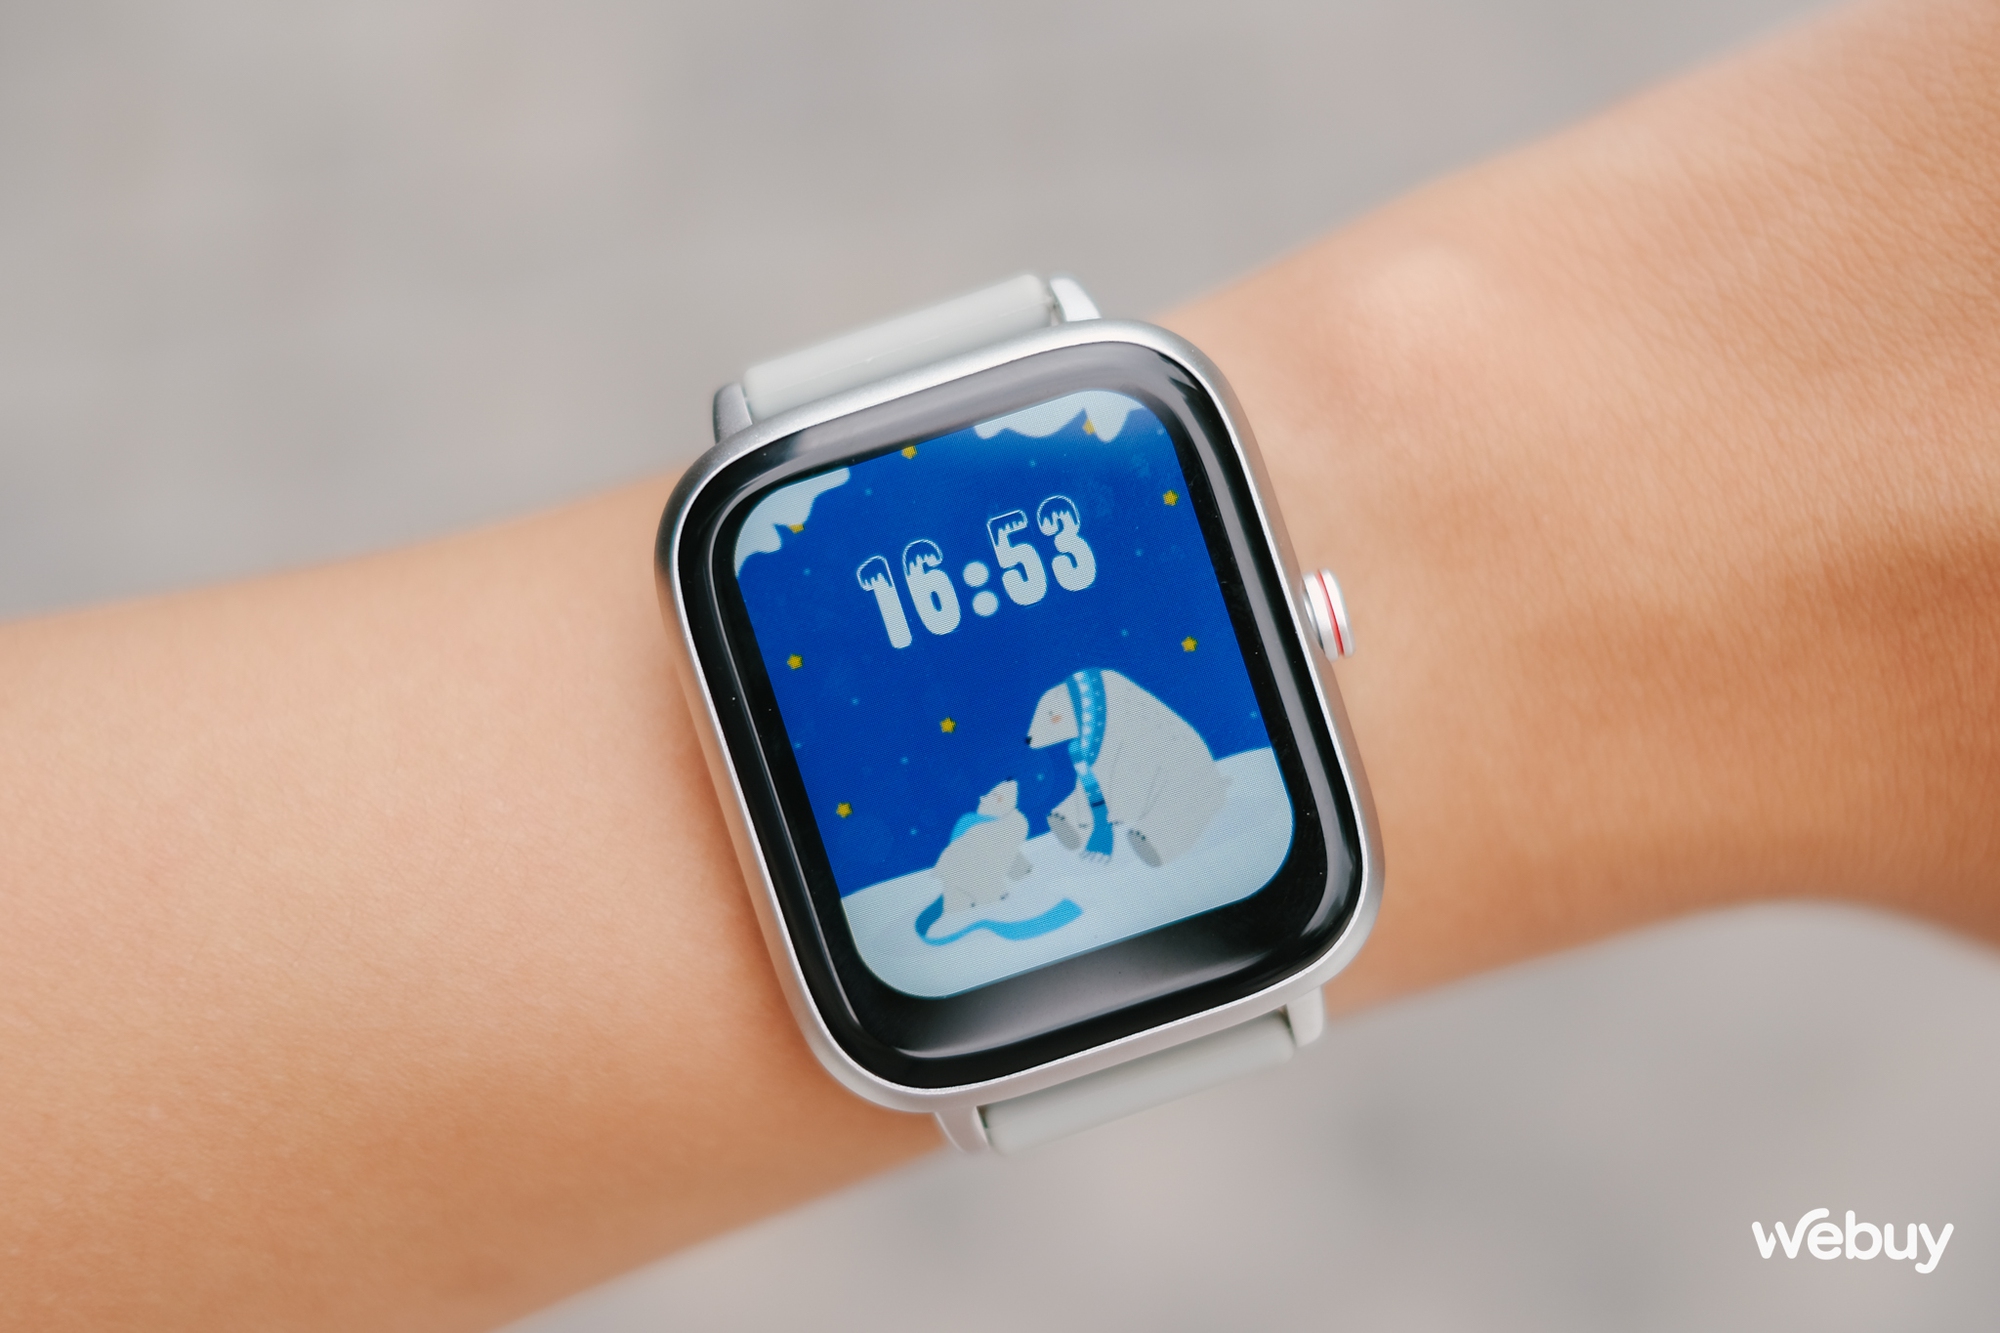 Smartwatch chính hãng giá 490.000 đồng: Thiết kế giống Apple Watch, khung viền nhôm, có loa/mic thoại, pin 7 ngày - Ảnh 3.